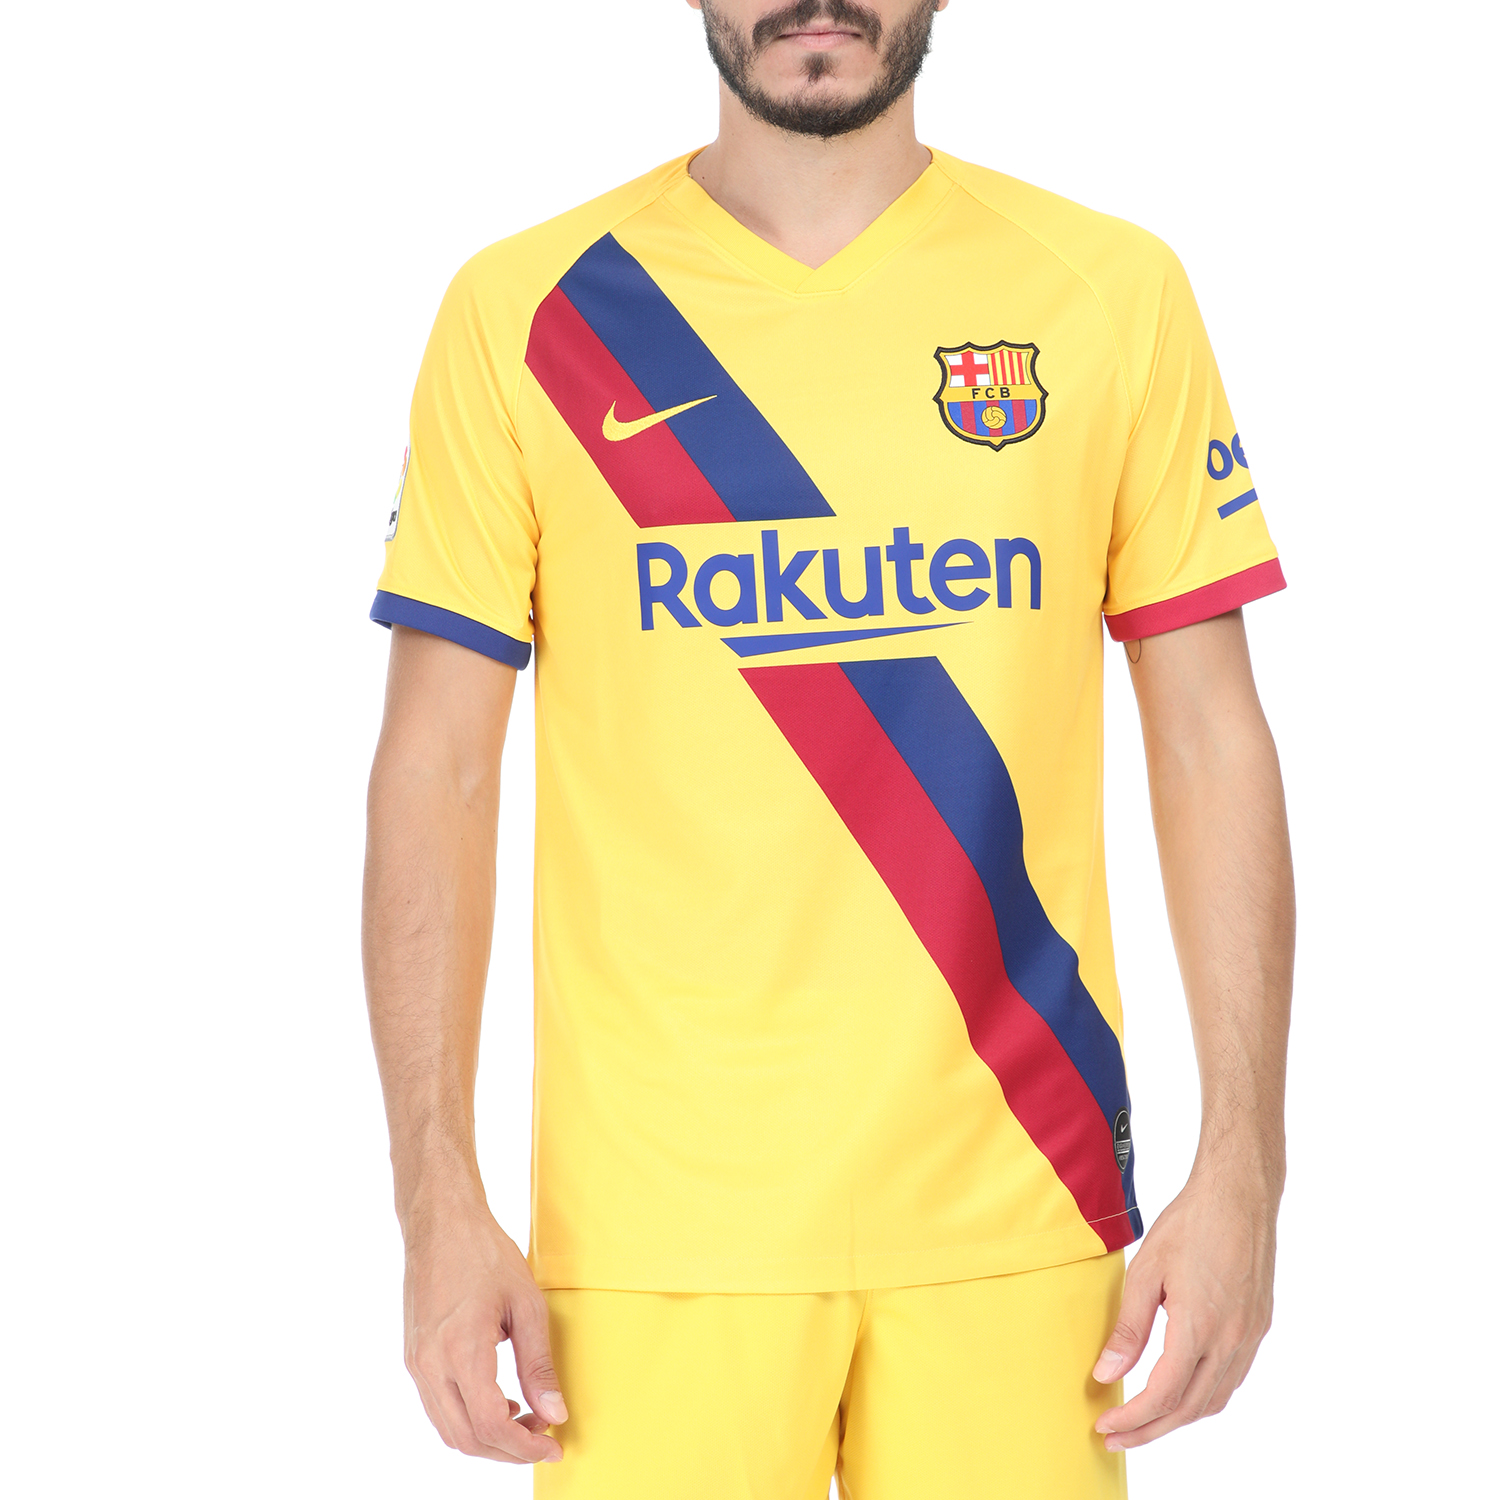 Ανδρικά/Ρούχα/Αθλητικά/T-shirt NIKE - Ανδρική κοντομάνικη μπλούζα NIKE FCB BRT STAD JSY κίτρινη